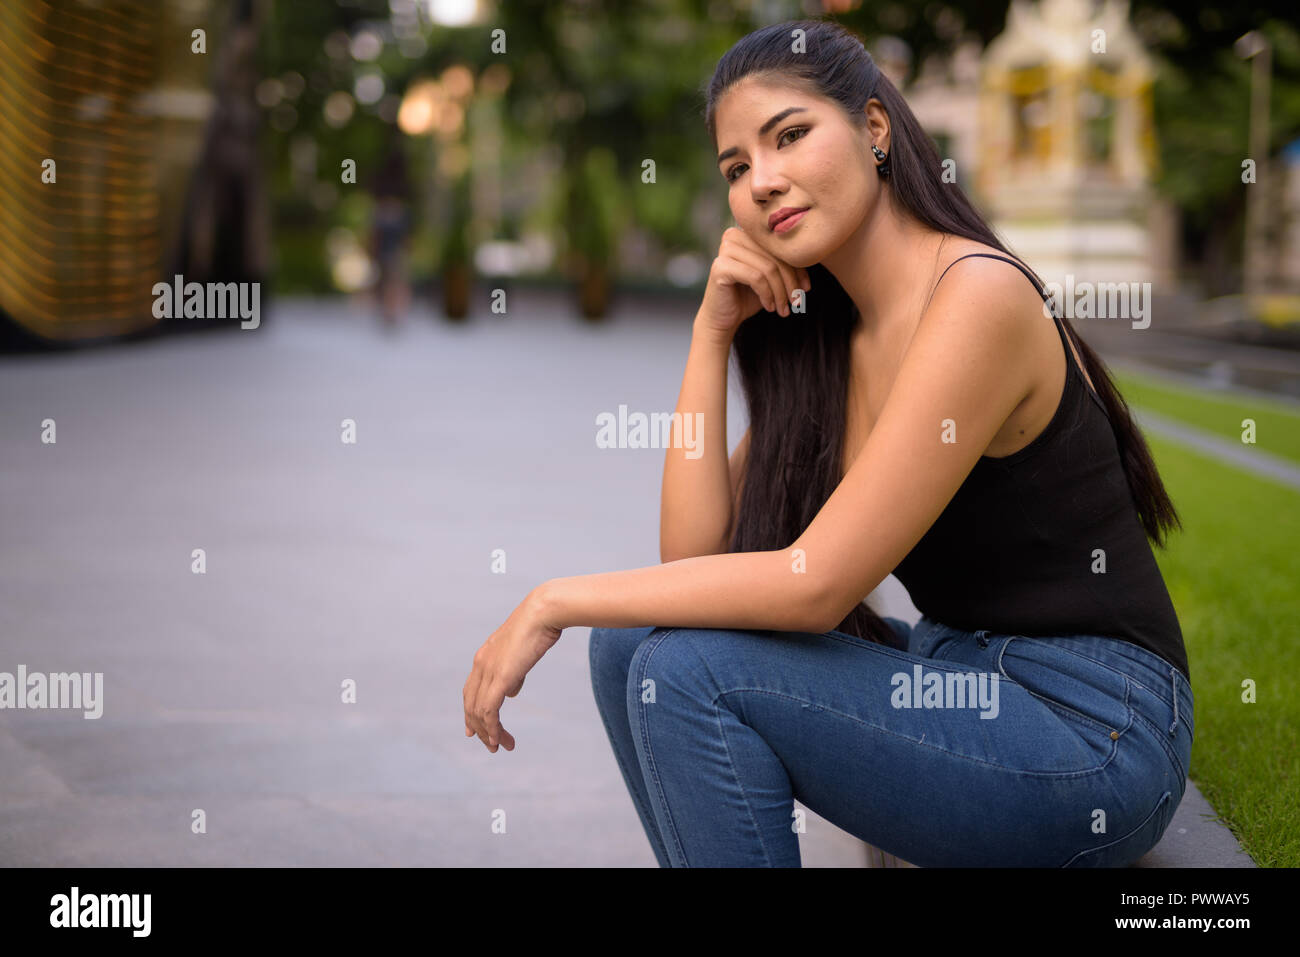 Junge schöne asiatische Frau rund um die Stadt zu erkunden Stockfoto